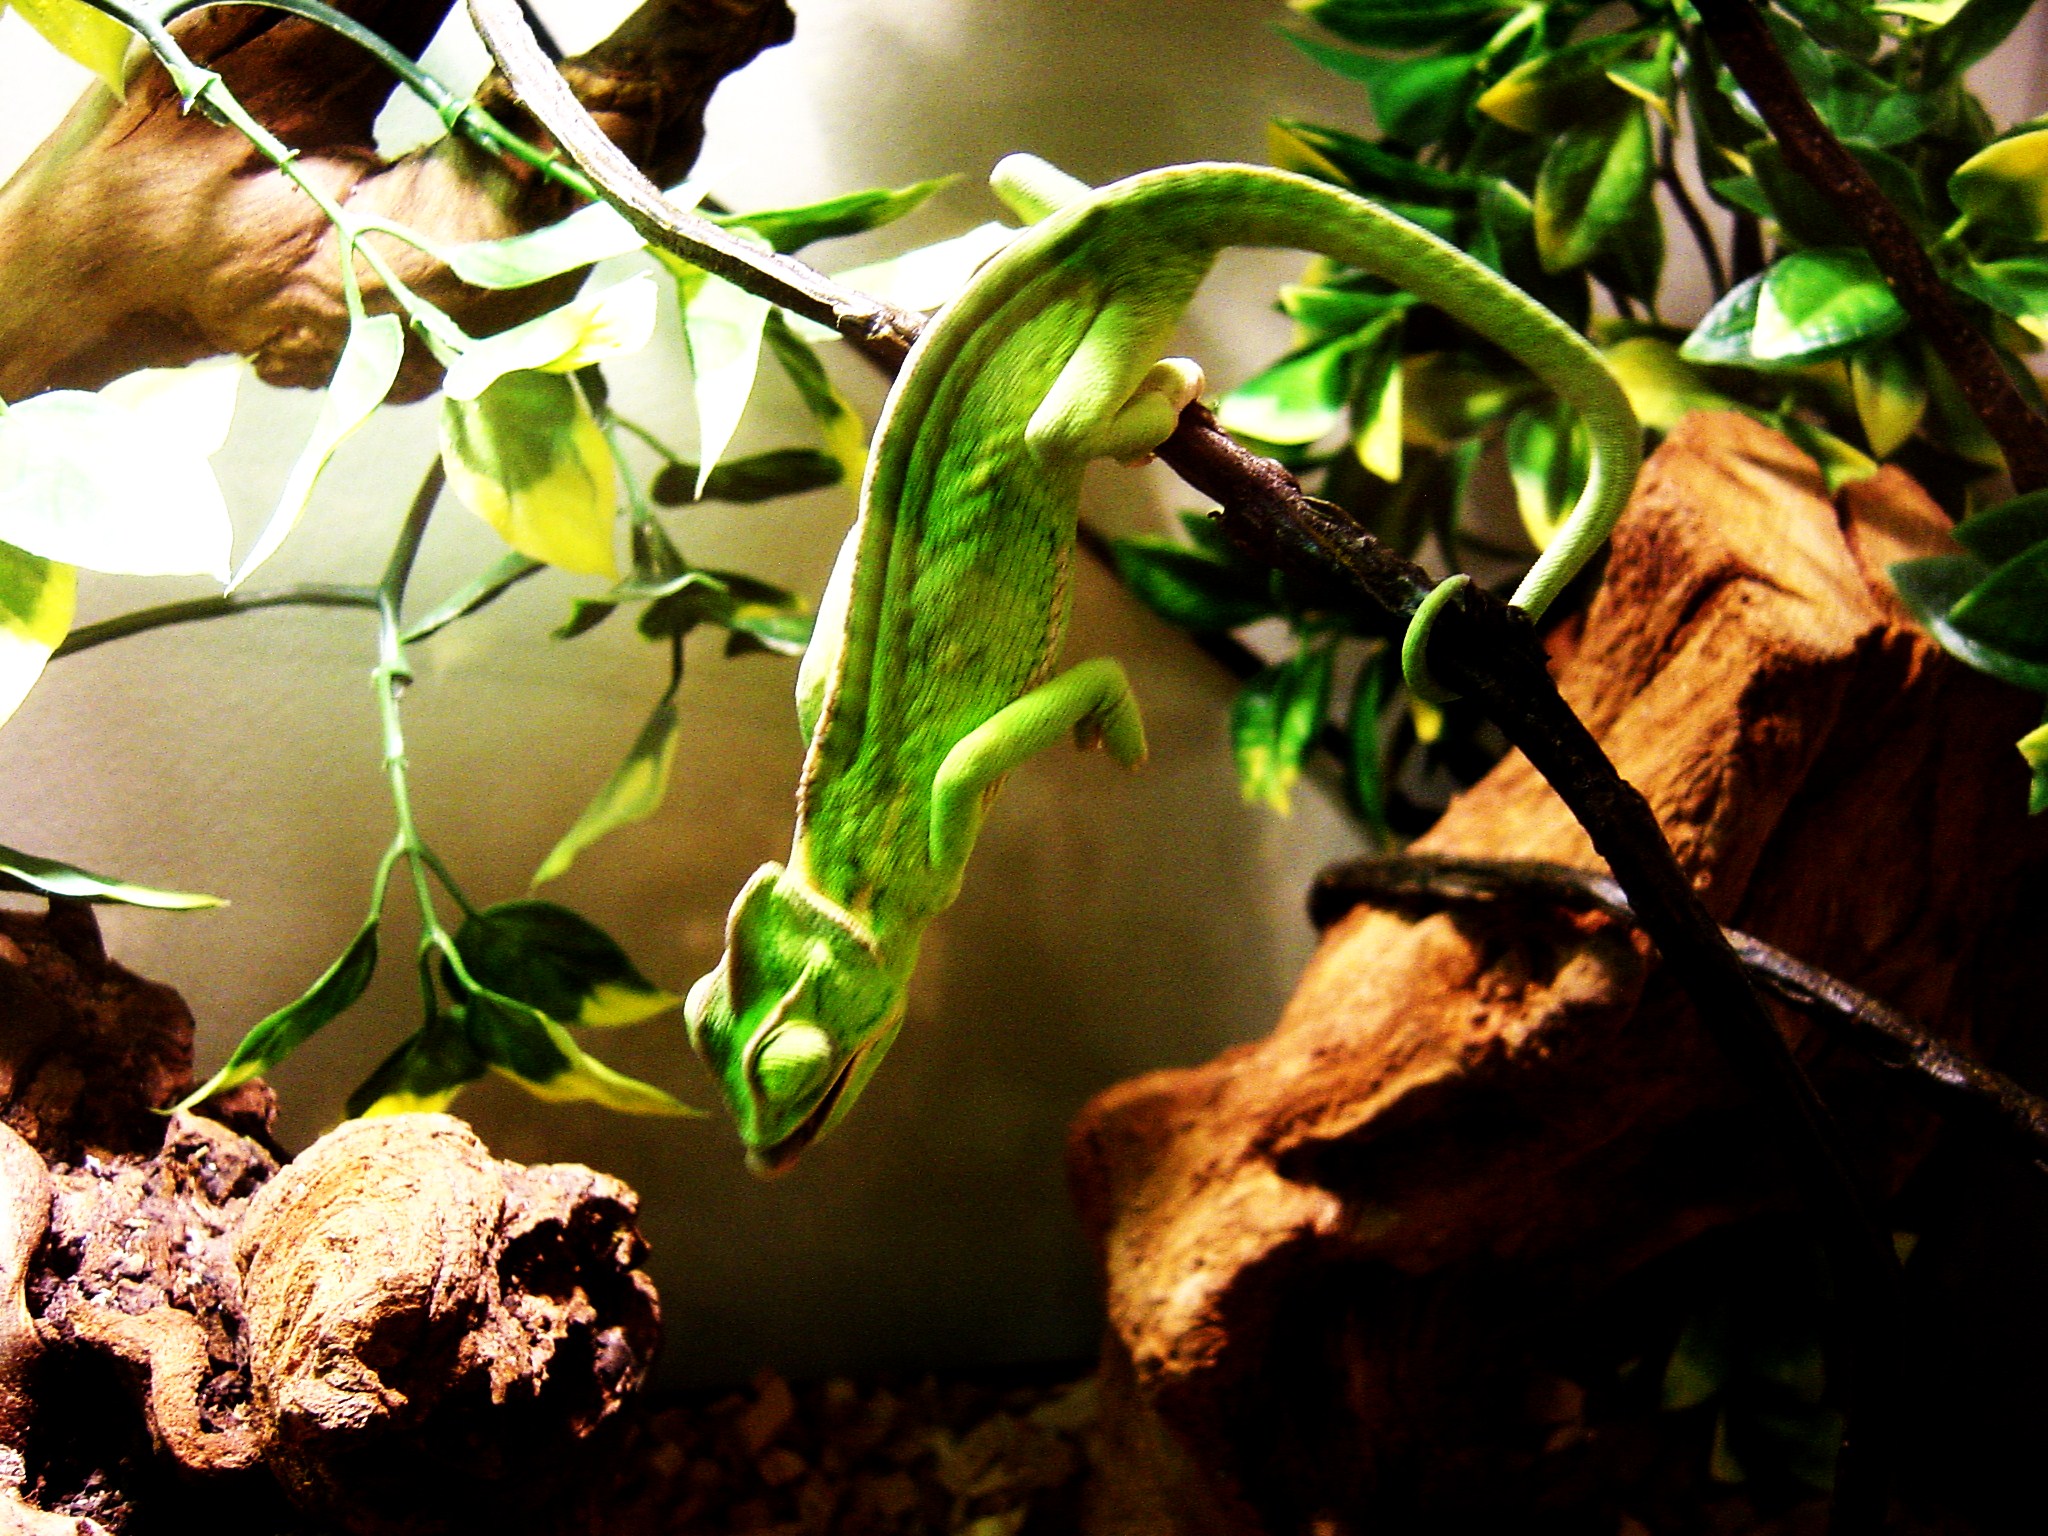 Veiled Chameleon Image 2